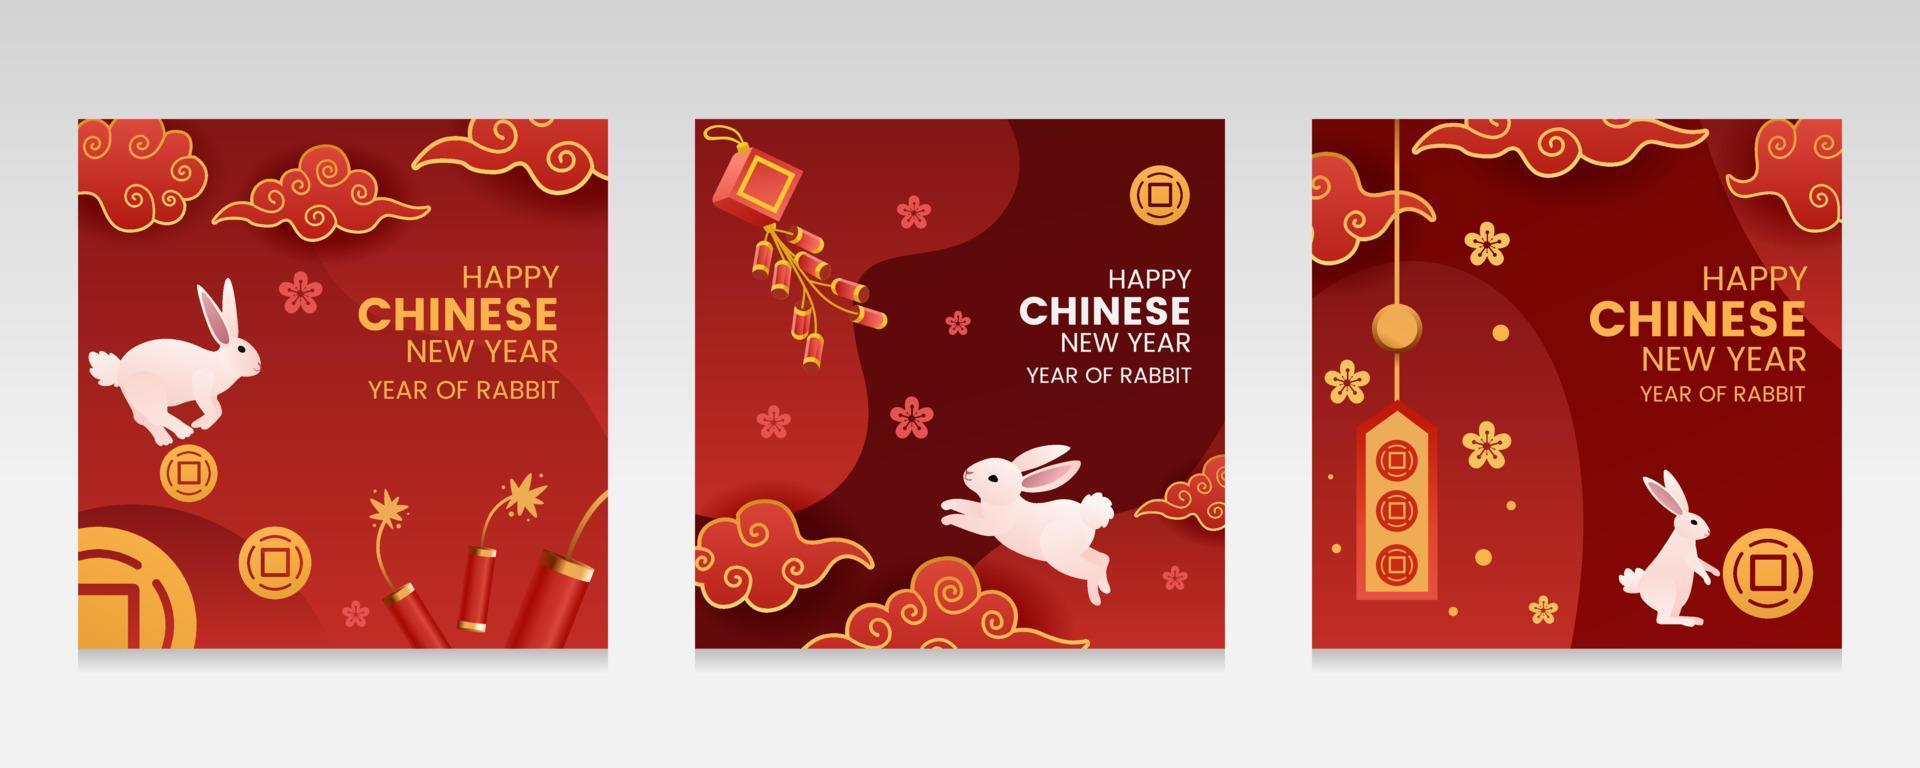 coelho do ano novo chinês e tipografia de letras para pôster de banner vetor